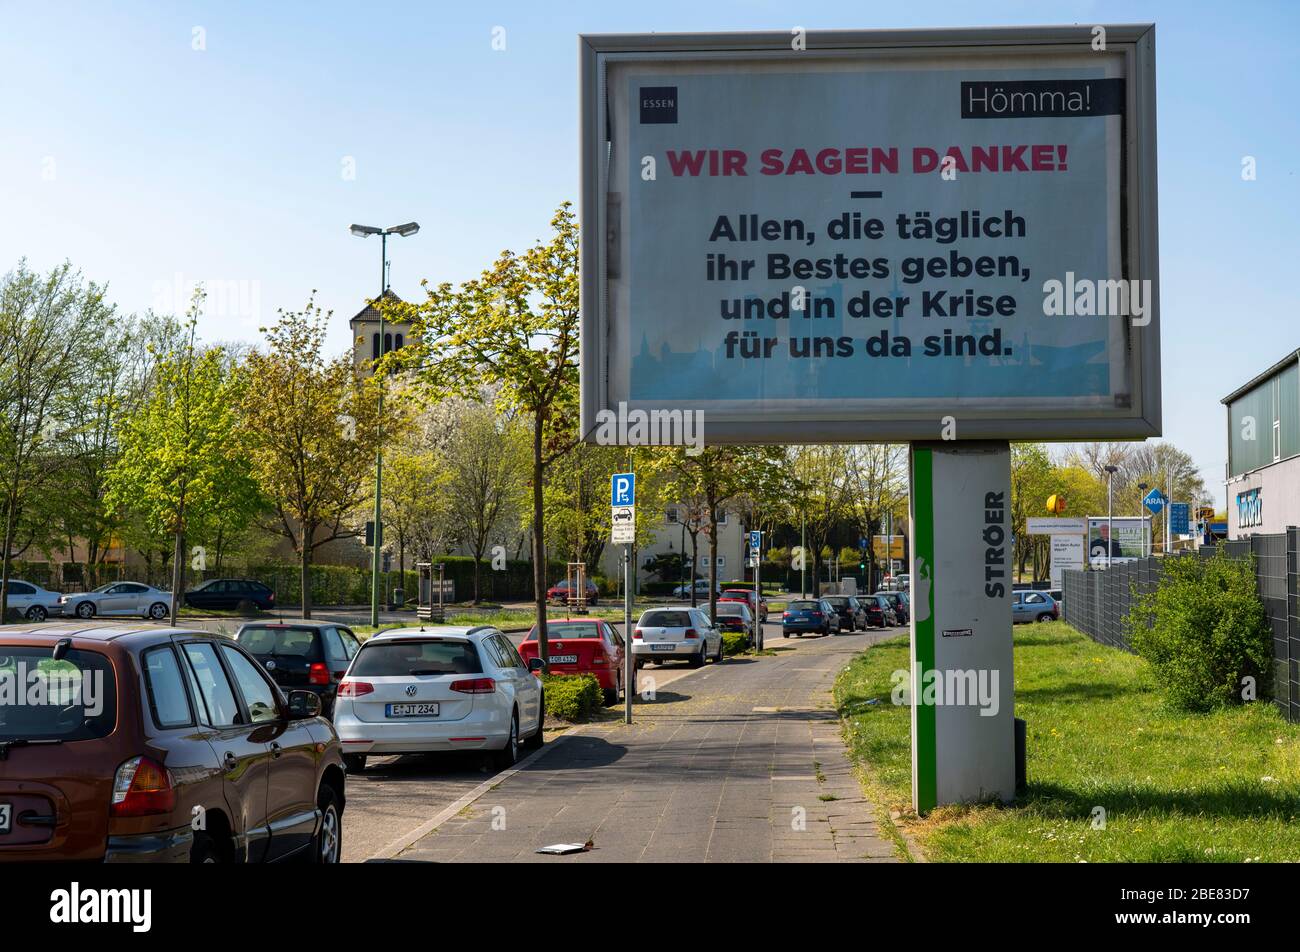 Publicidad durante la Corona Pandémica, Ciudad de Essen agradece a los héroes de la vida cotidiana, los efectos de la crisis de la corona en Essen, Alemania Foto de stock